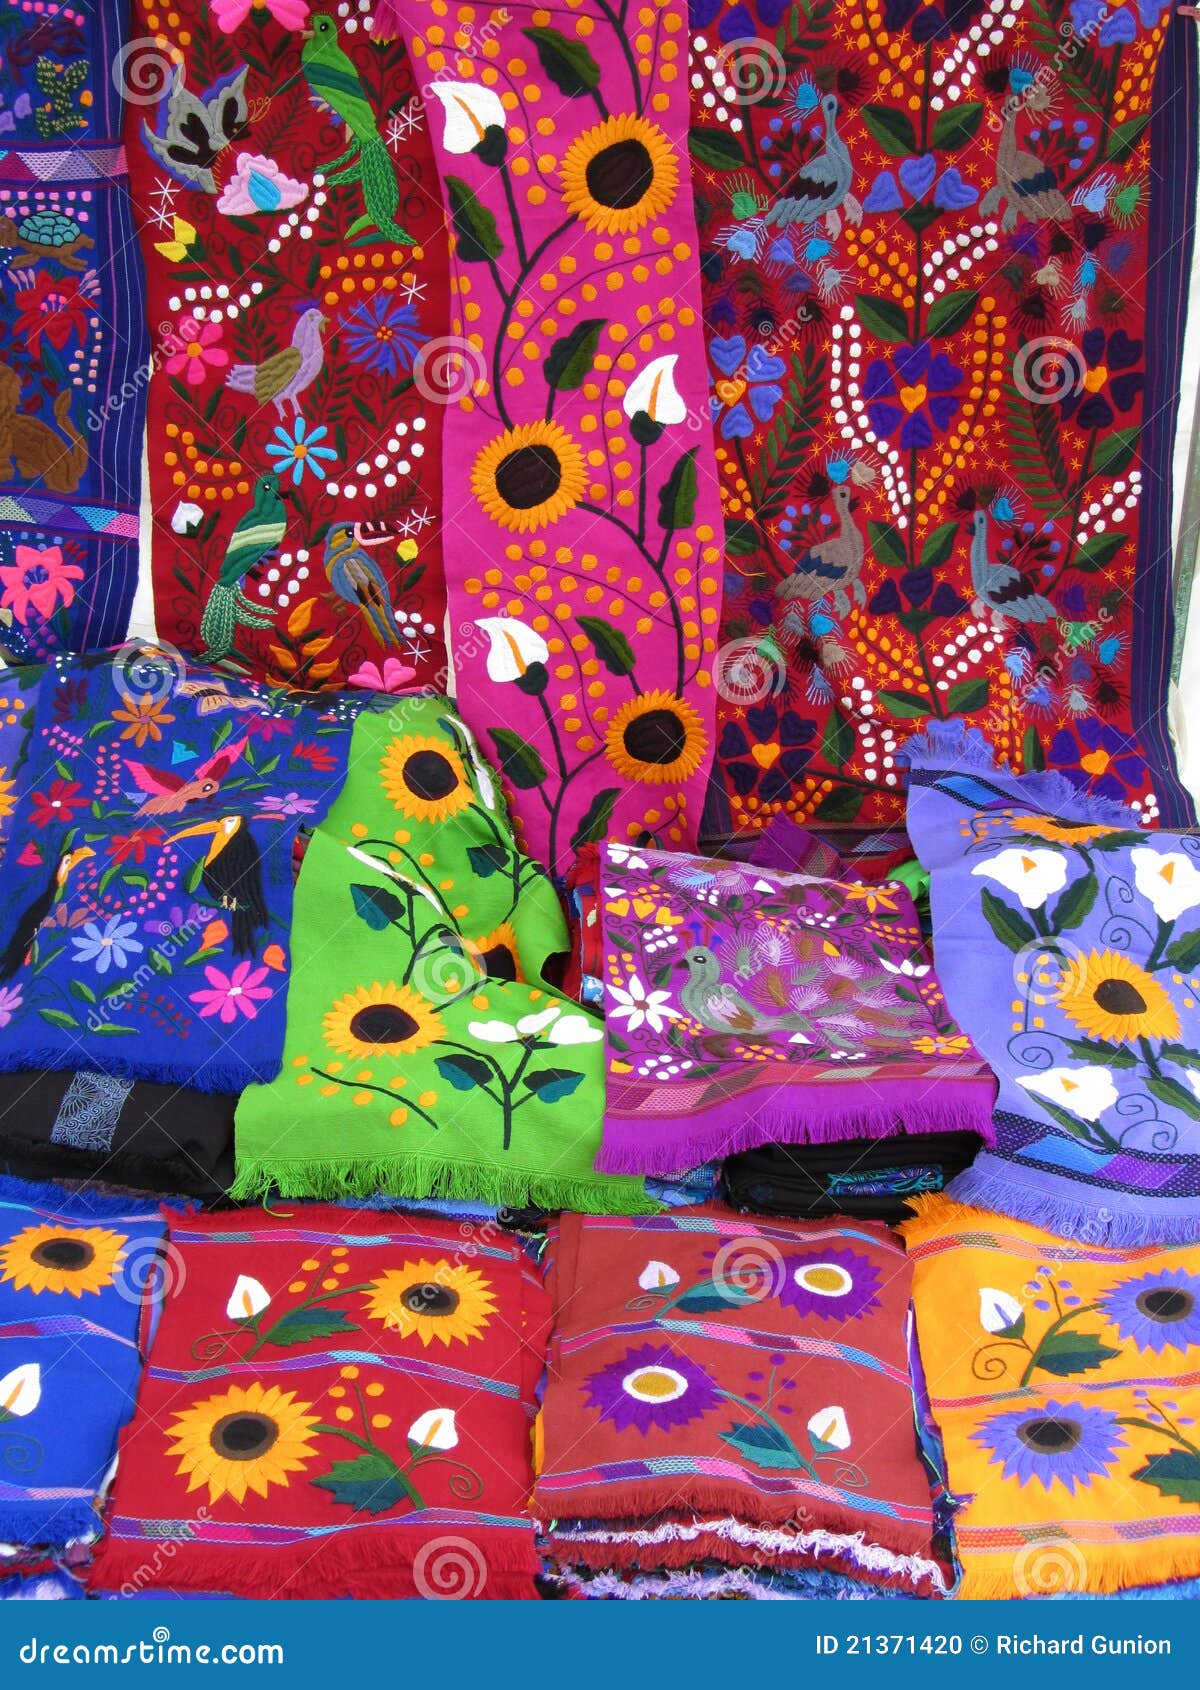 colorful chiapas textiles